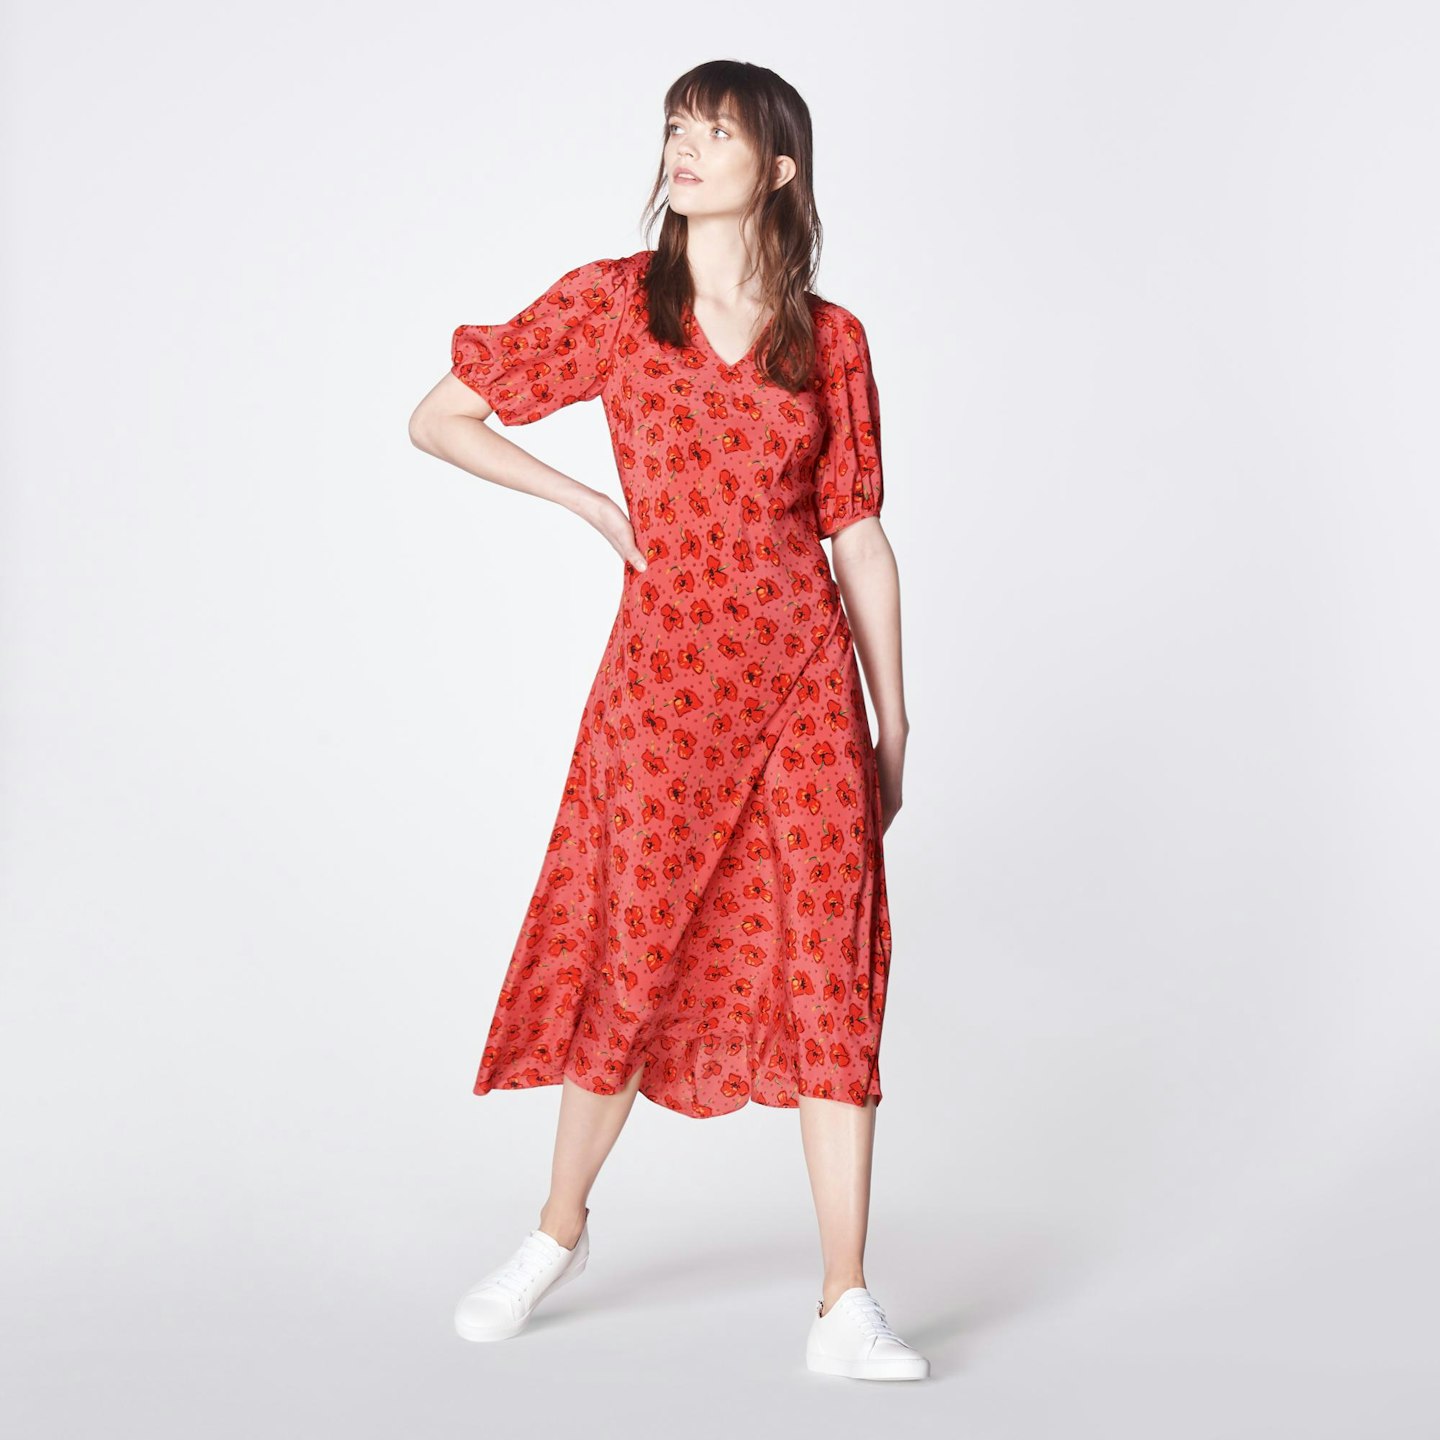 L.K.Bennett, Poppy Print Dress, £175